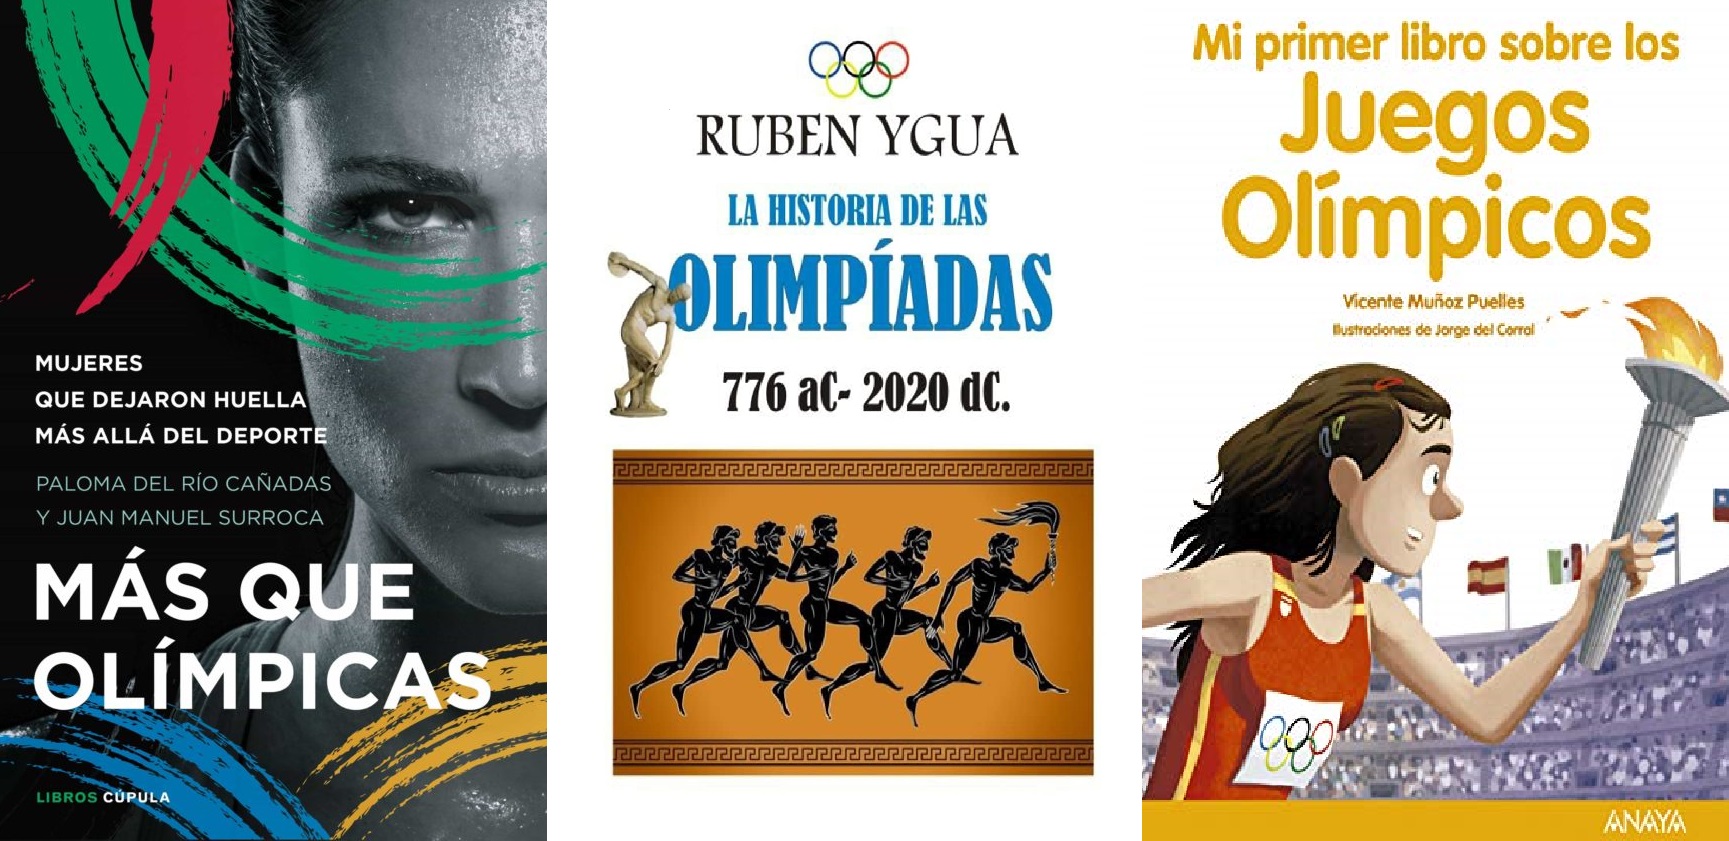 Juegos Olímpicos 2020+1: Los últimos libros sobre la gran cita del deporte mundial